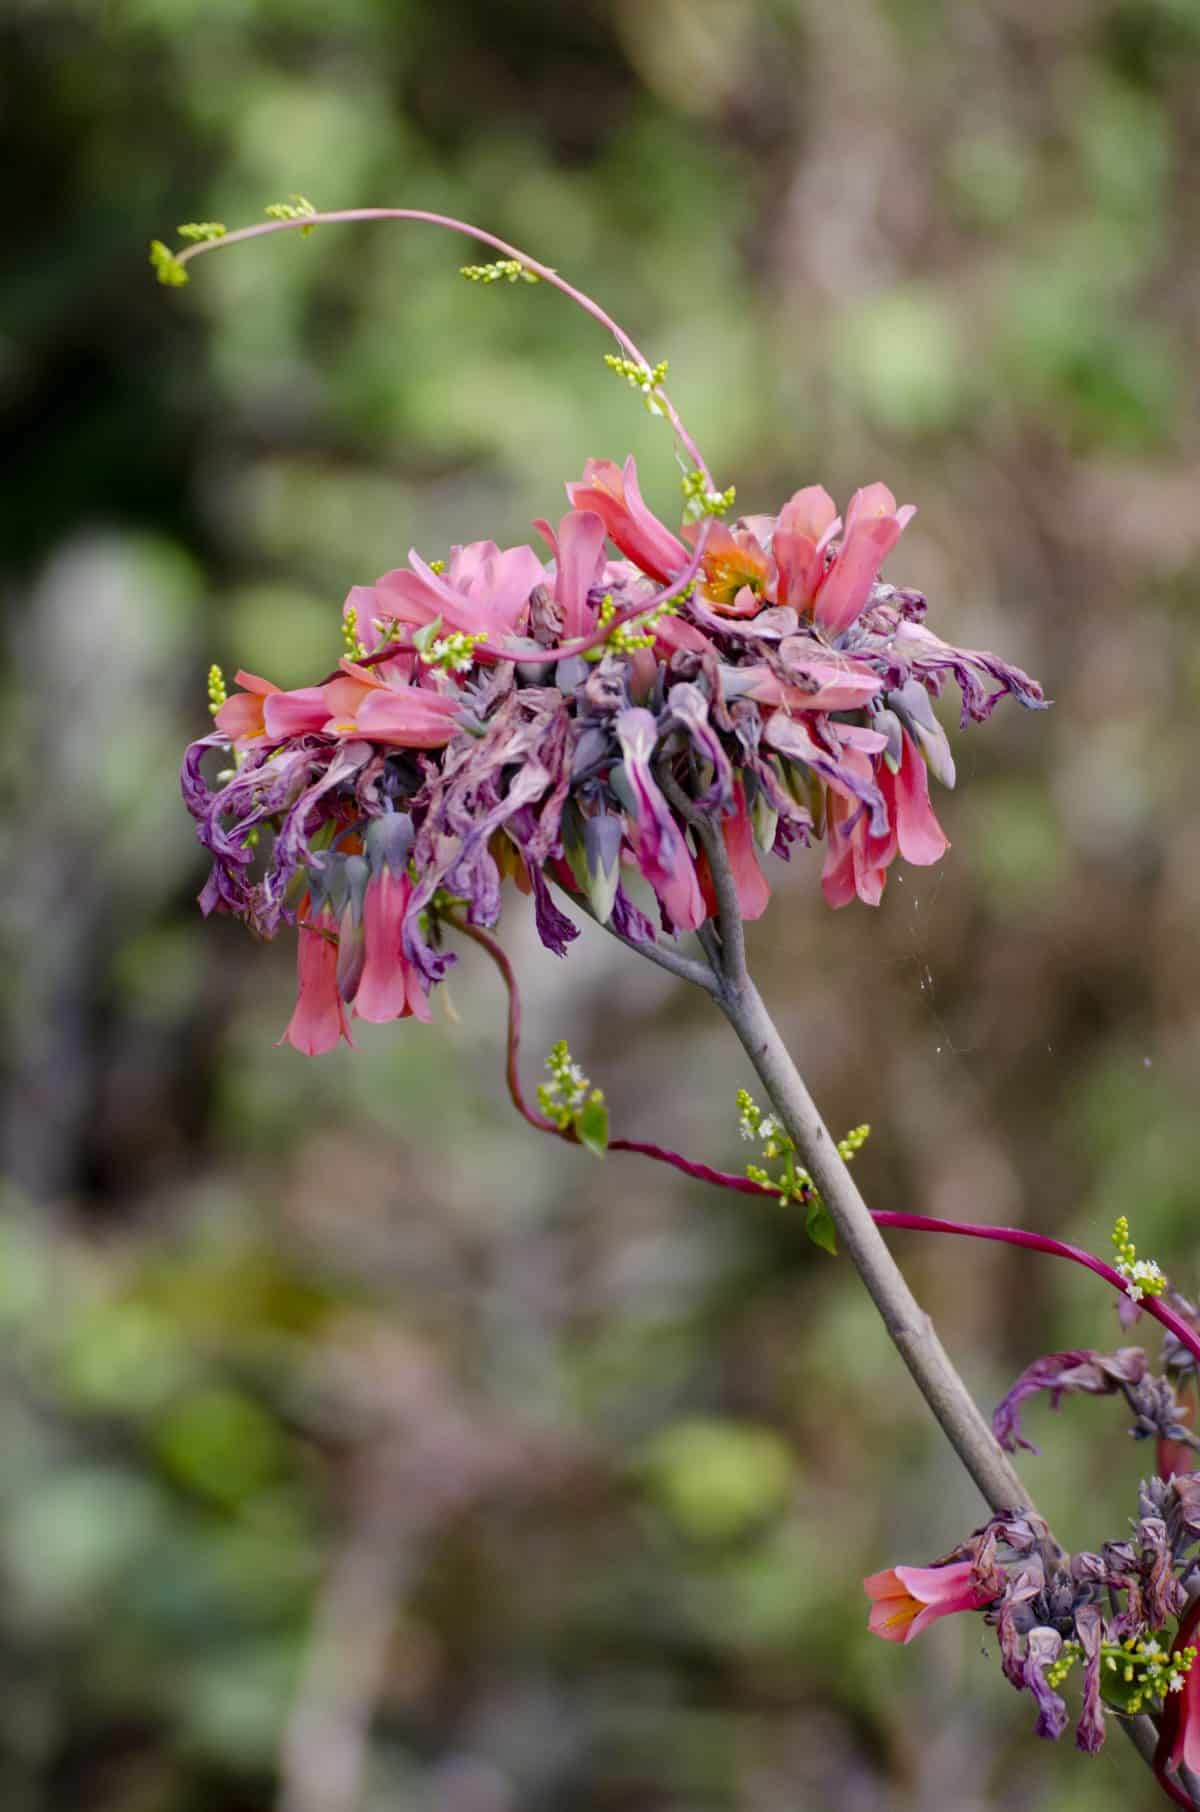 La floración fue abundante teniendo en cuenta las condiciones desérticas, Parque Jerusalem, Ecuador | ©Angela Drake